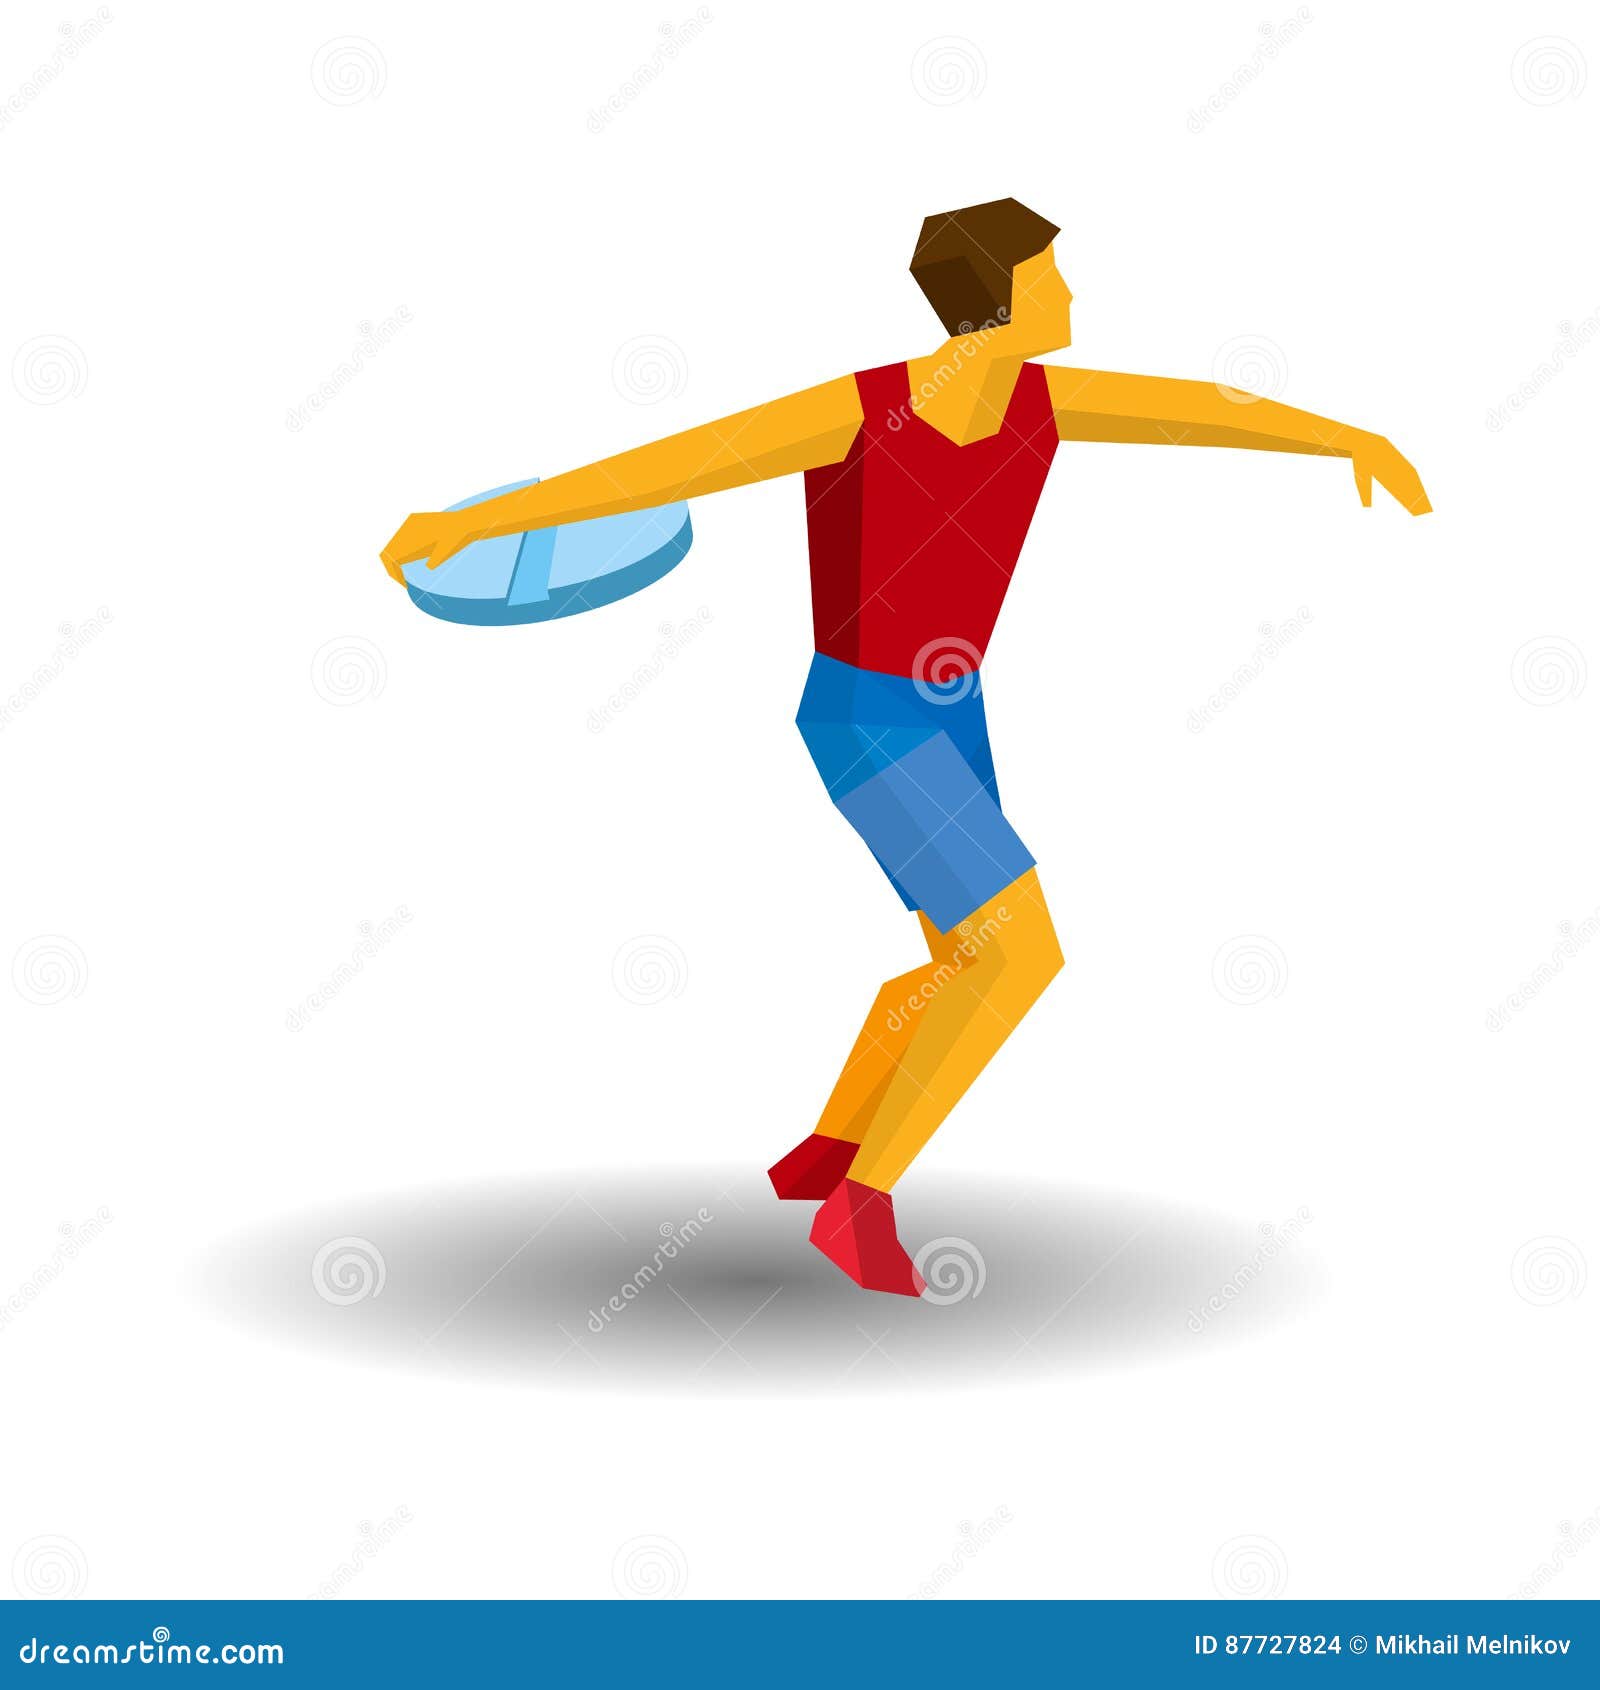 Кидать дисками. Спортсмен бросает диск вектор. 3д карикатура метание диска. Бросать диск картинка. Athlete throwing.